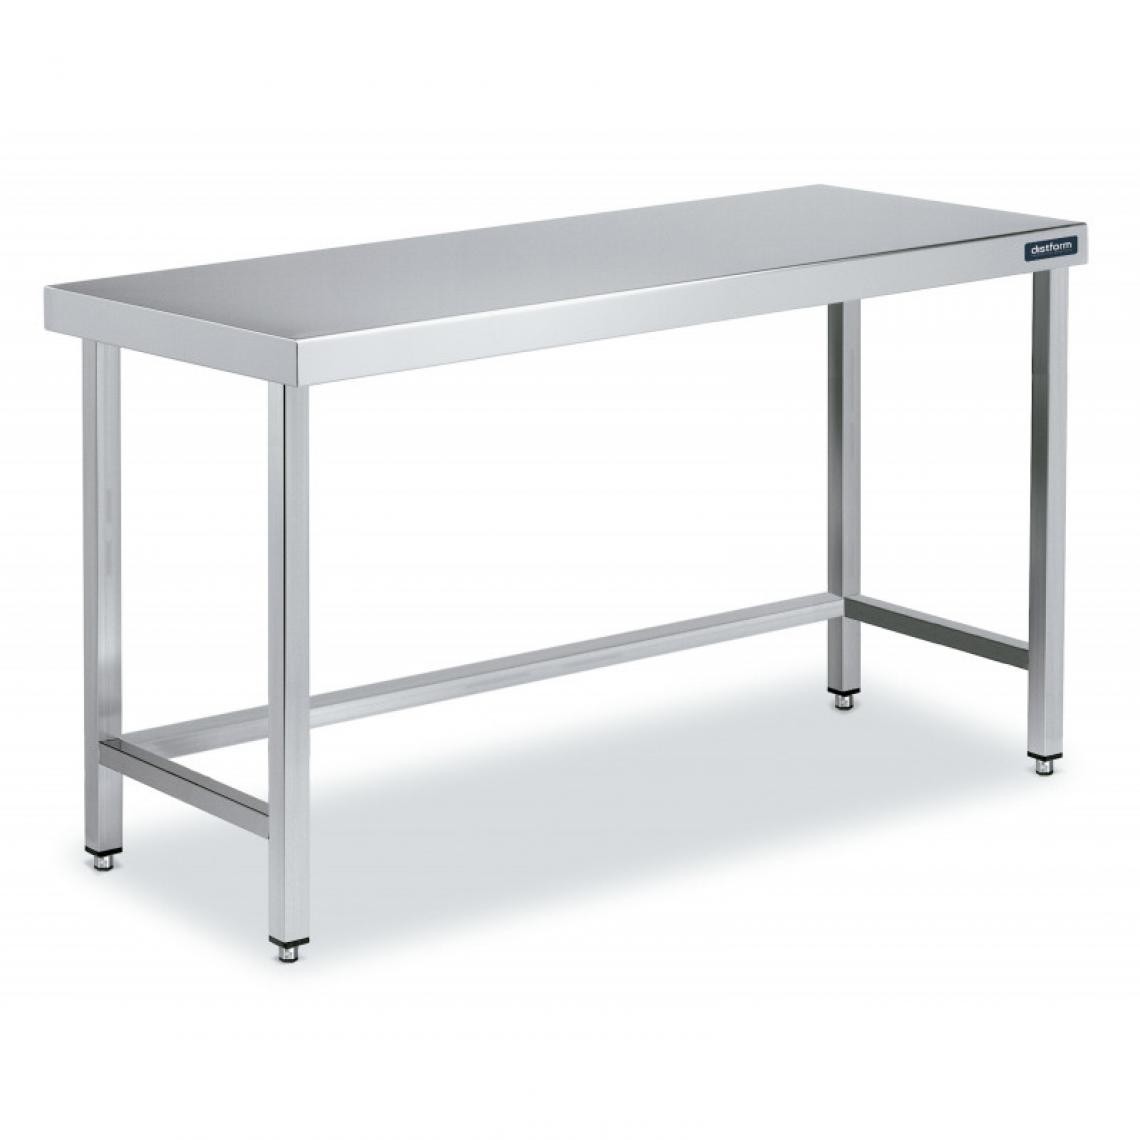 DISTFORM - Table Centrale en Inox avec renforts Profondeur 700 mm - Distform - Acier inoxydable900x700 - Tables à manger